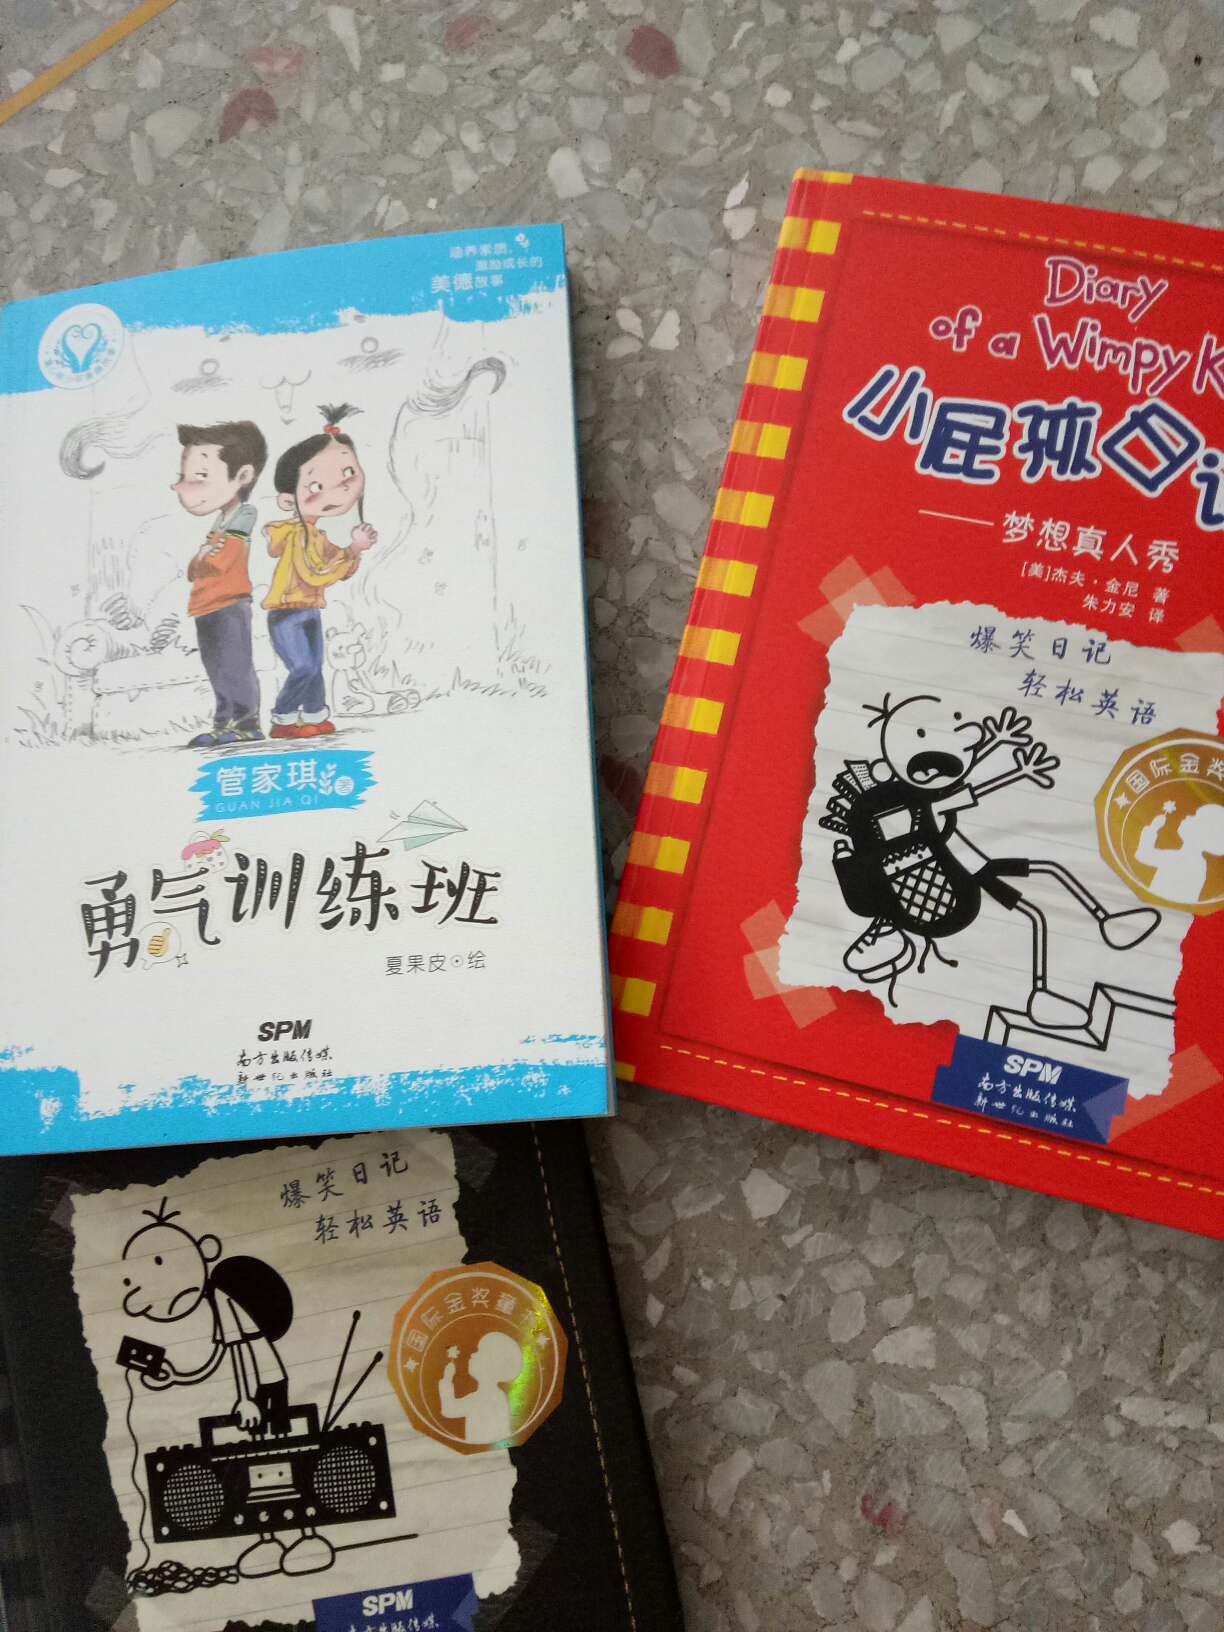 中英文双语版的，小学甚至初中都可以看，值得购买